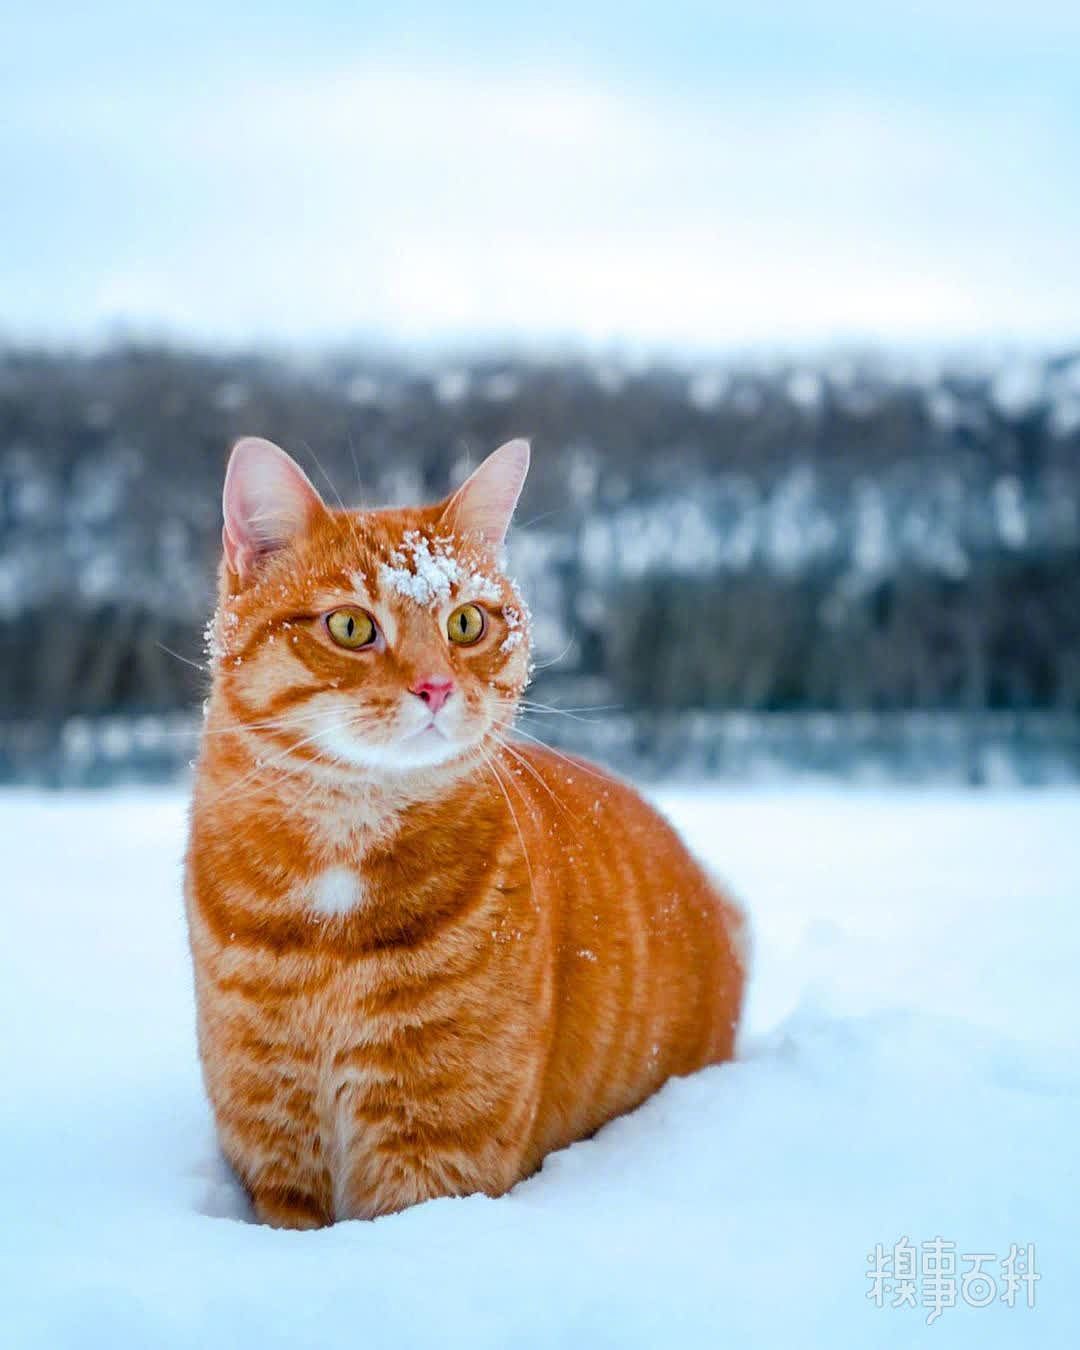 在雪中分外扎眼的大橘